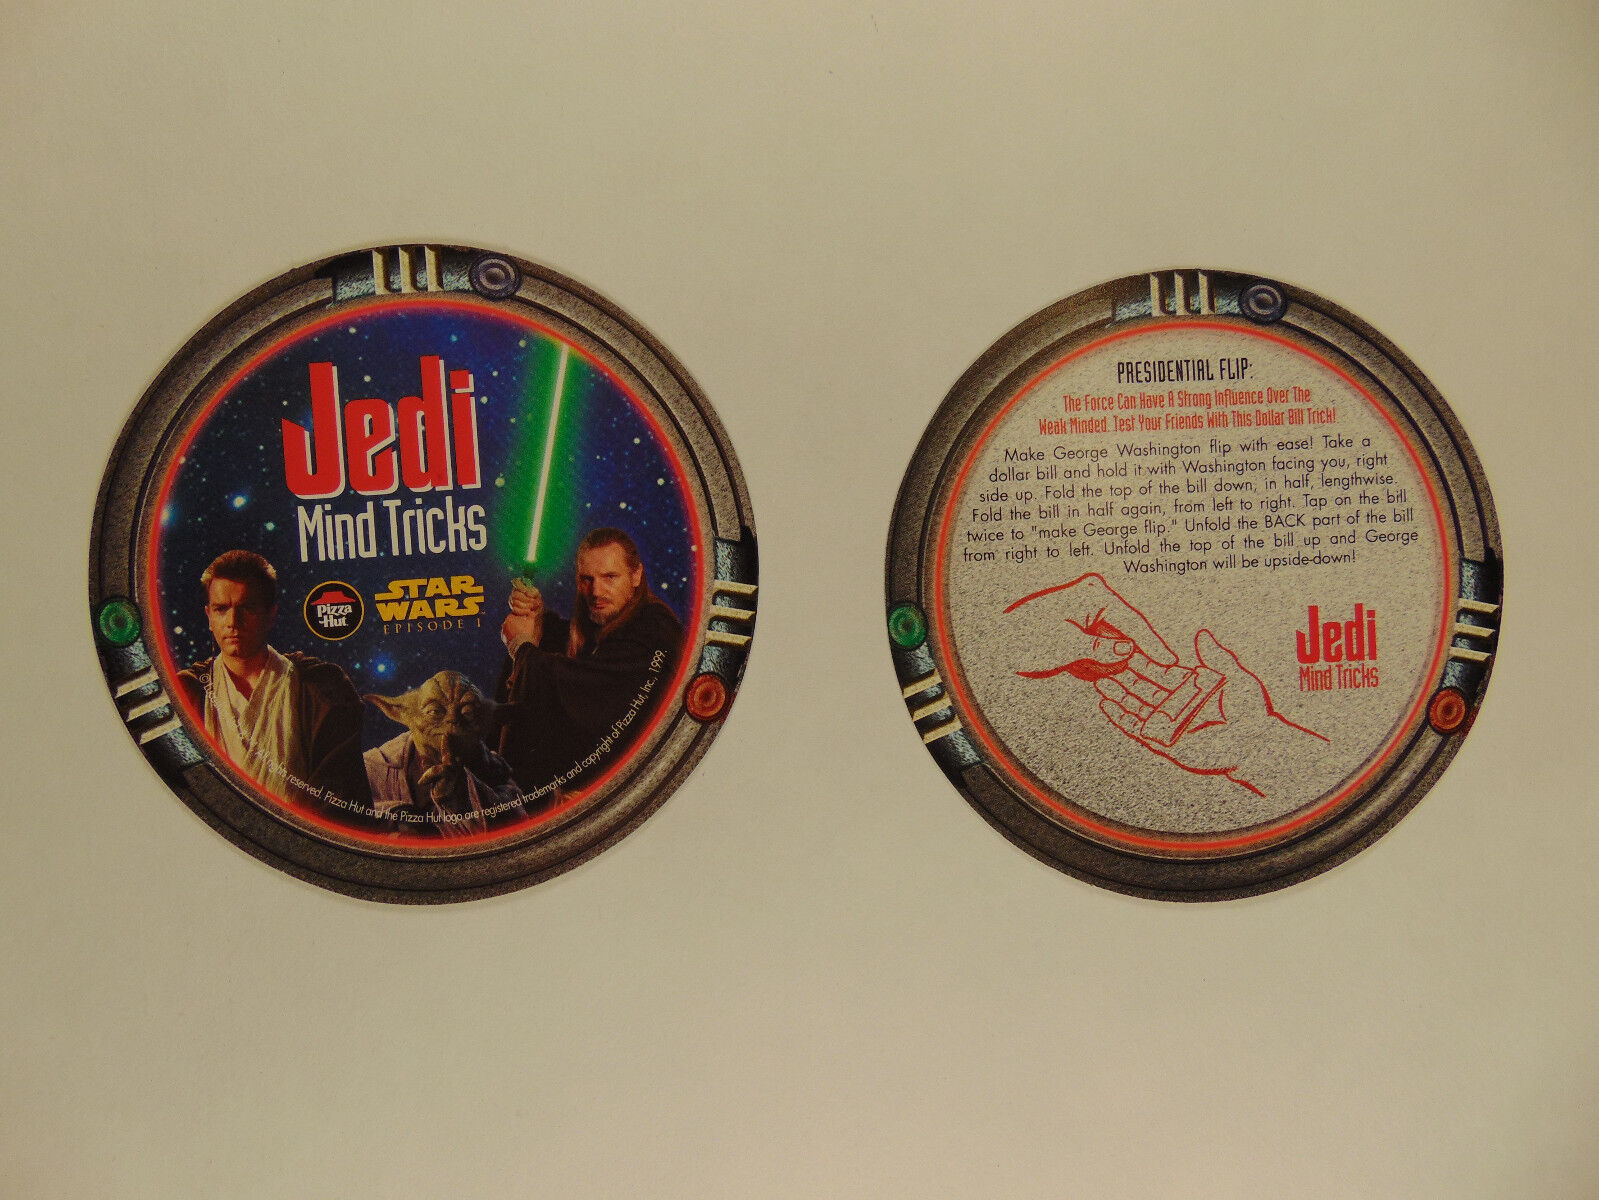 Star Wars episode 1 Pizza Hut tie-in coasters (Jedi Mind Tricks) 1999 (set of 5) Без бренда - фотография #5